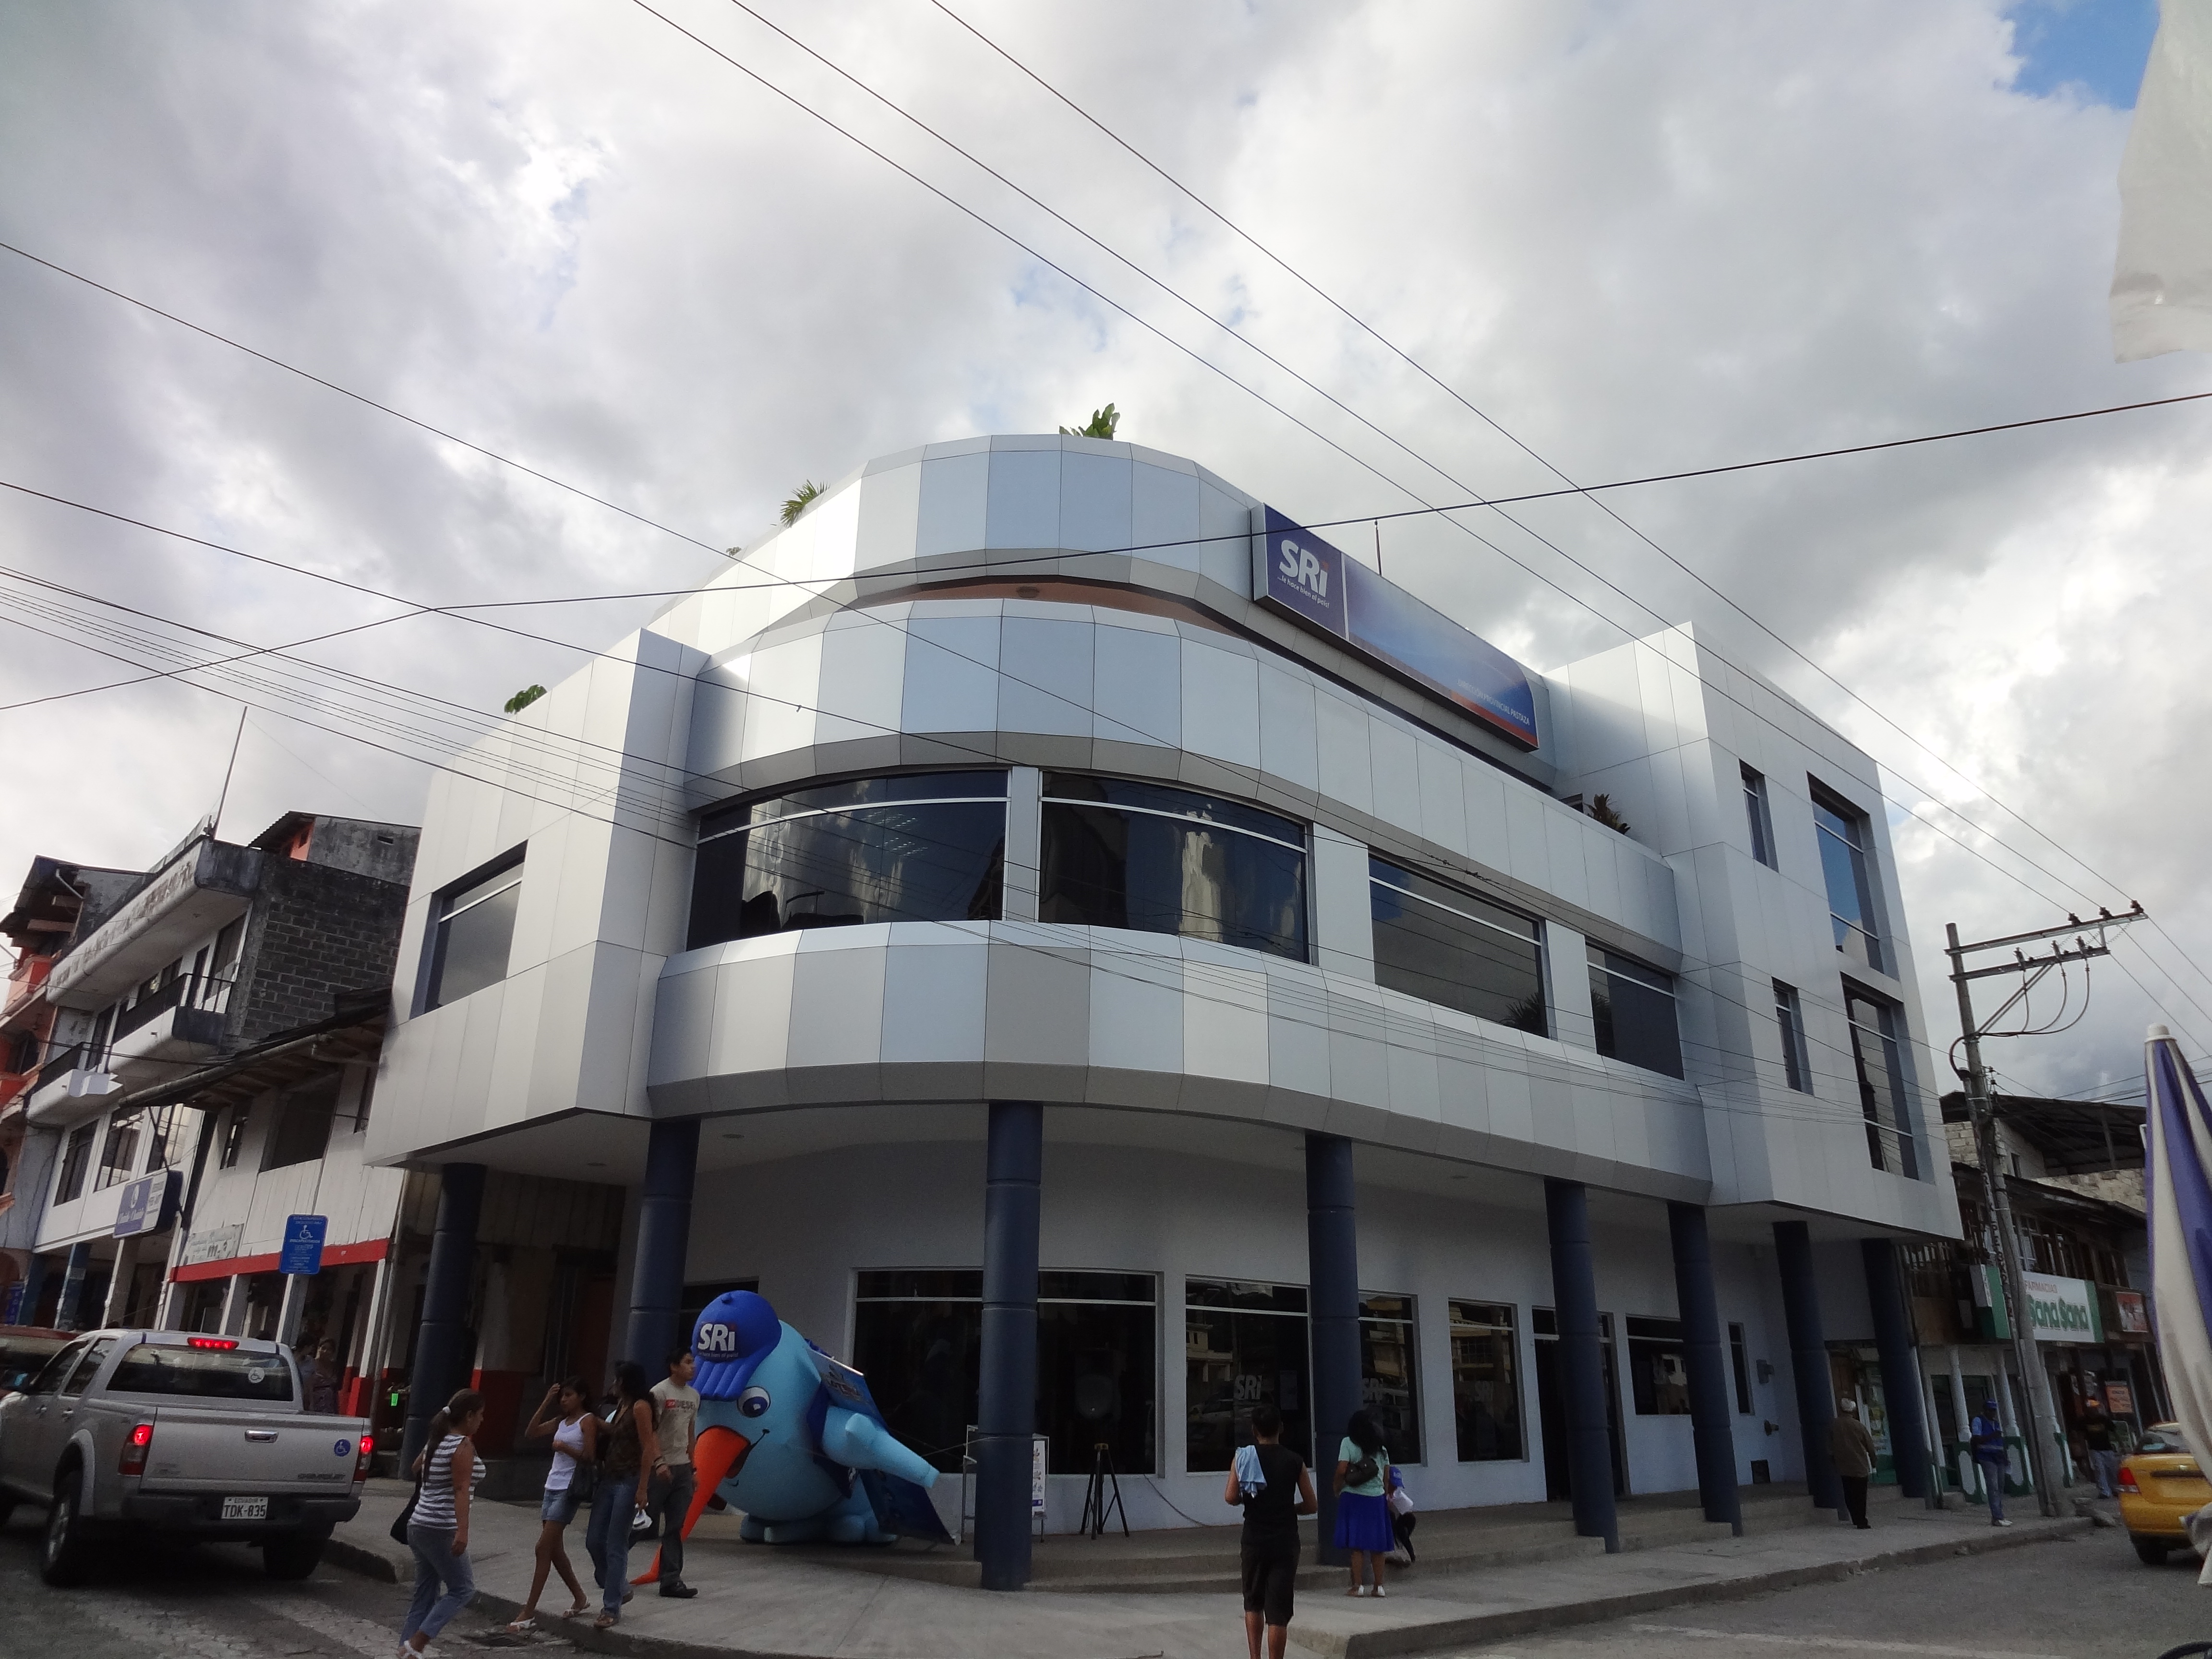 Foto: Edificio de rentas - Puyo (Pastaza), Ecuador